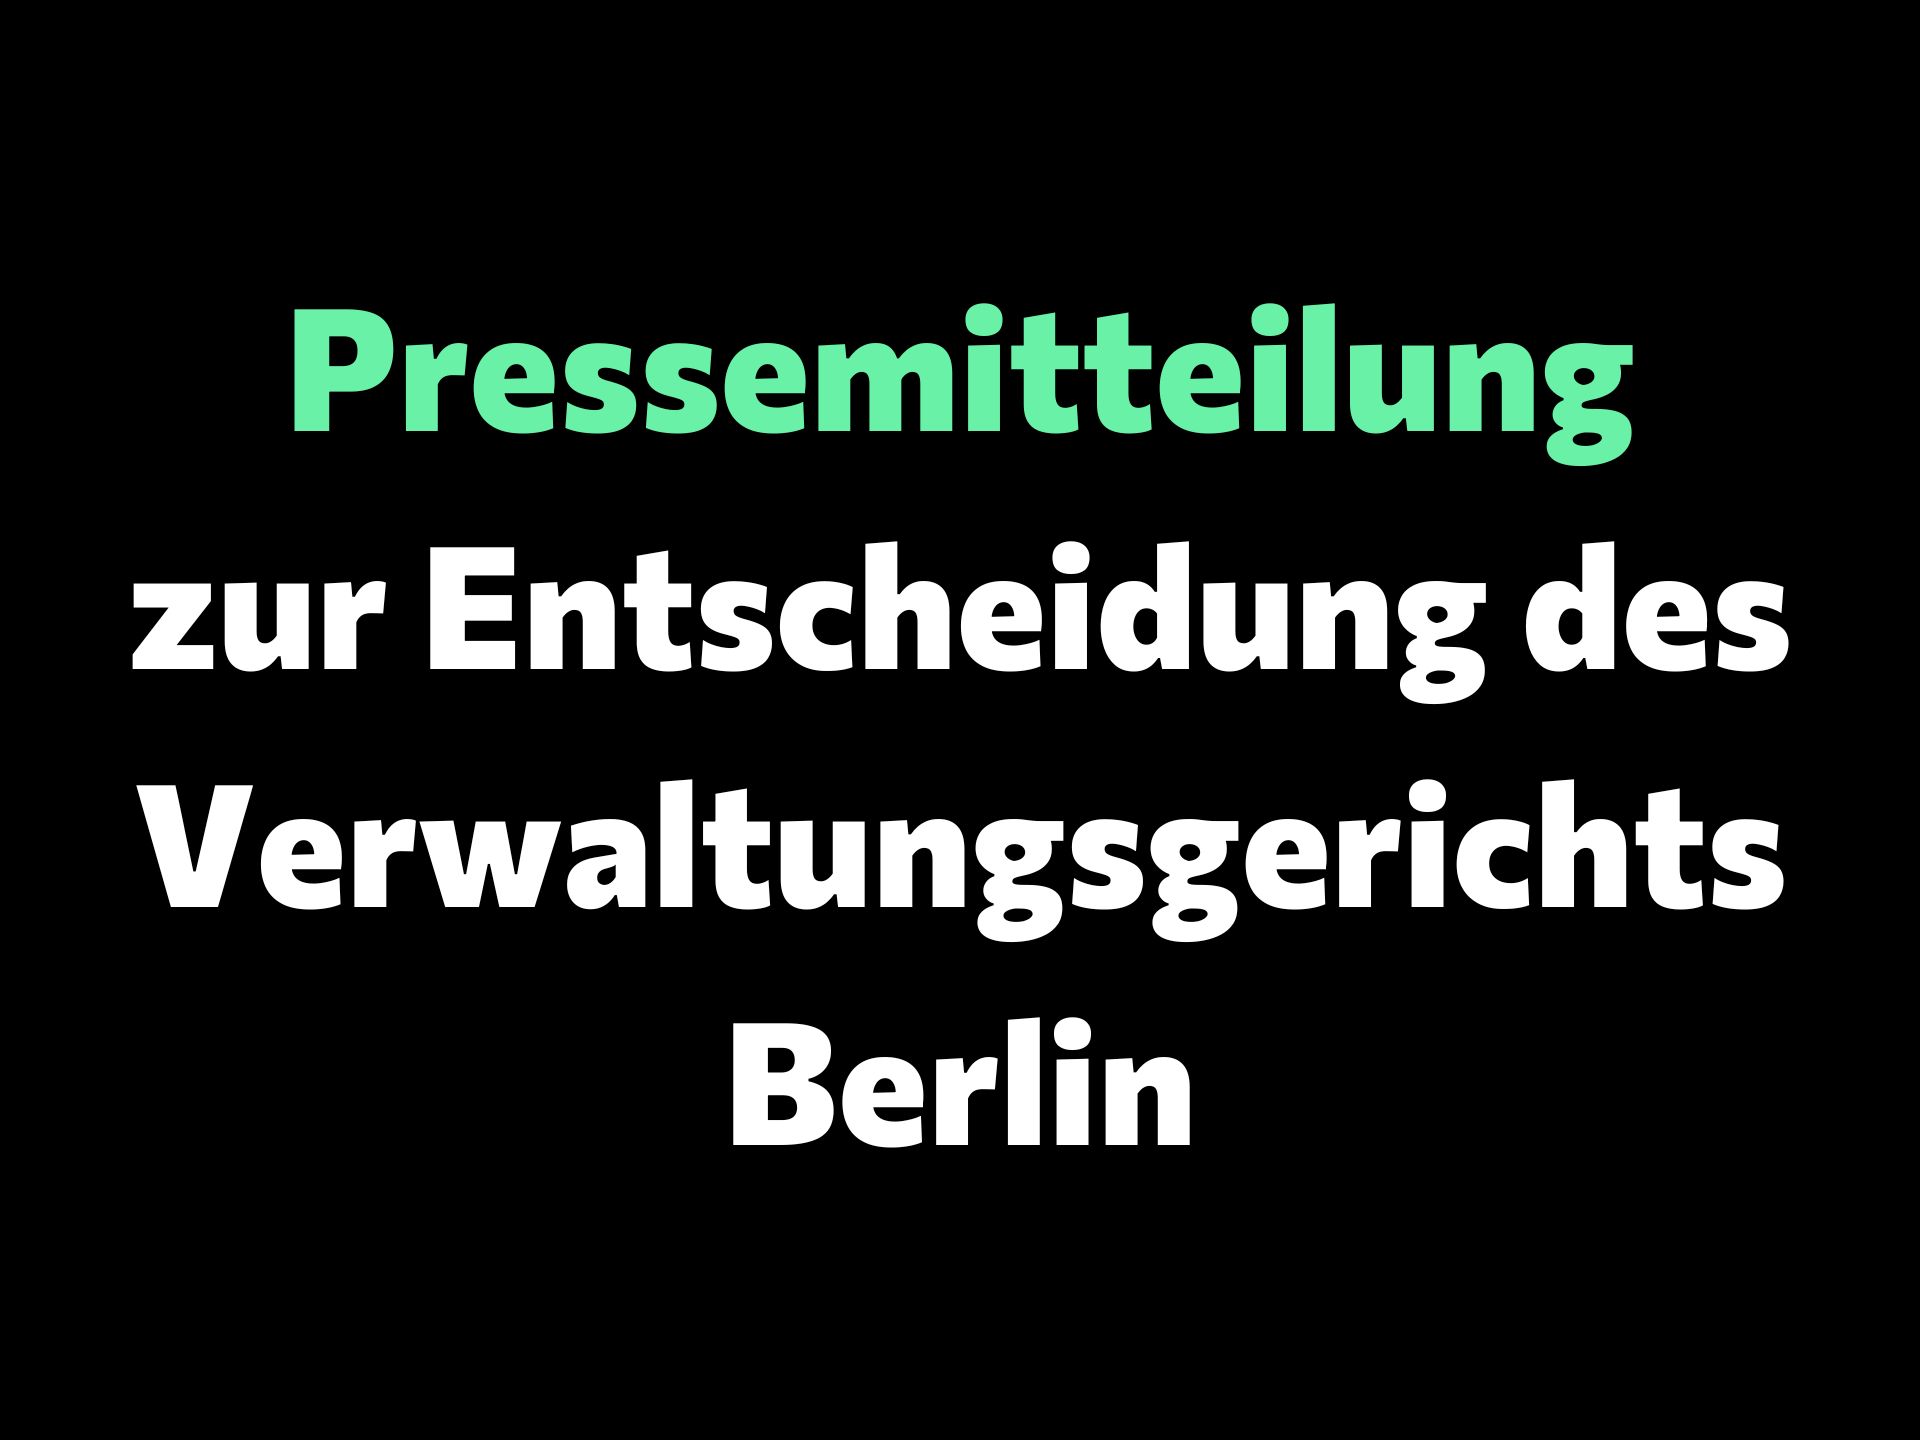 Pressemitteilung zur Entscheidung des Verwaltungsgerichts Berlin